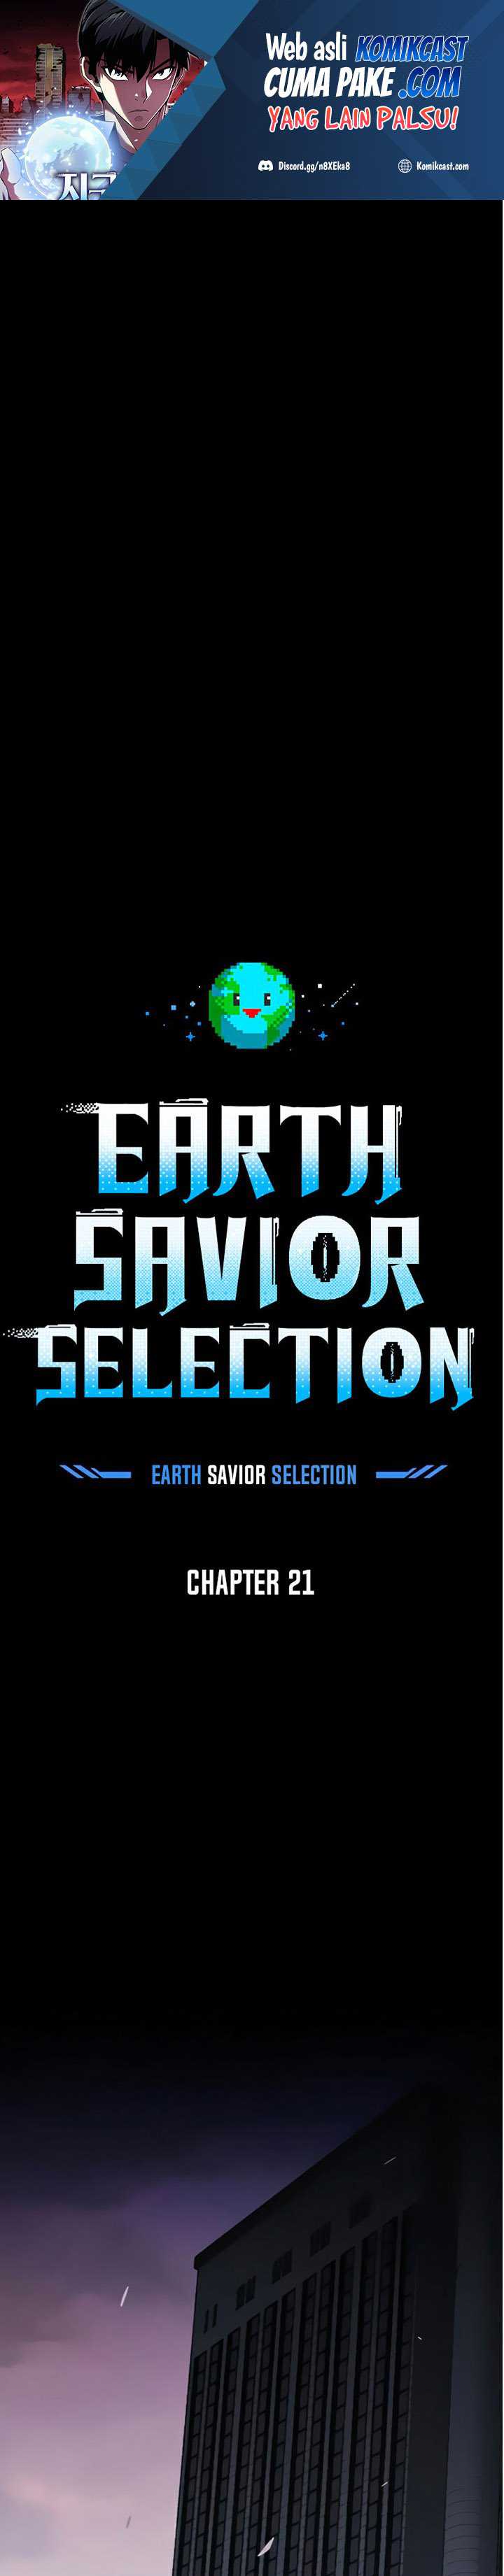 The Earth Savior Selection Chapter 21